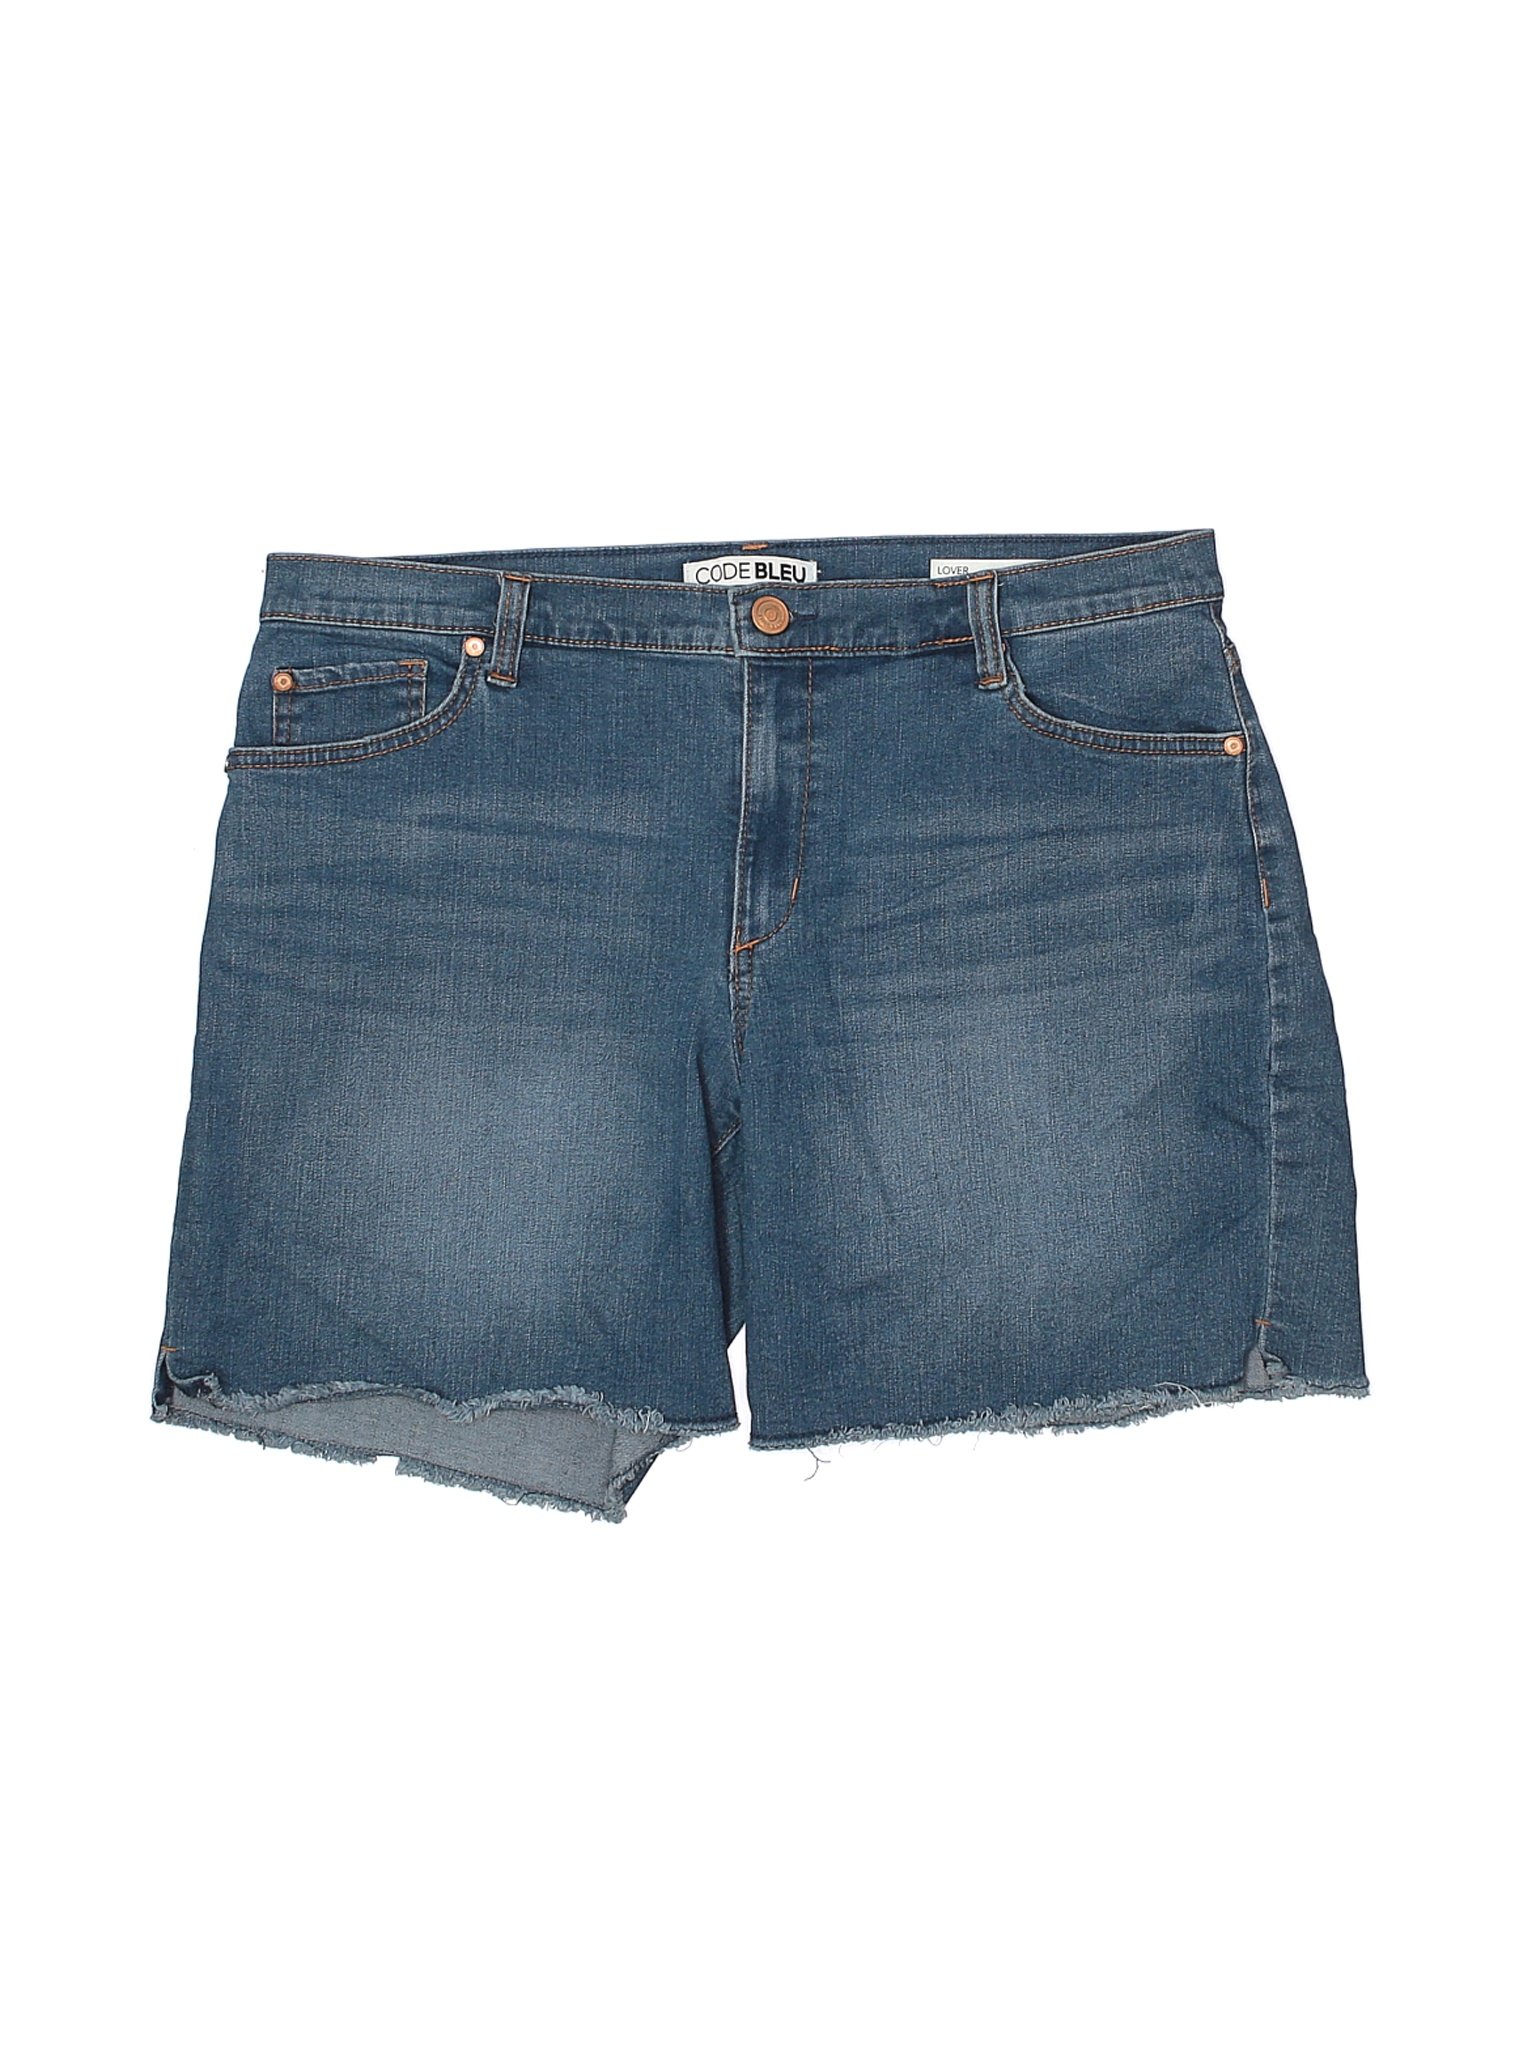 Code Bleu Women Blue Denim Shorts 10 | eBay